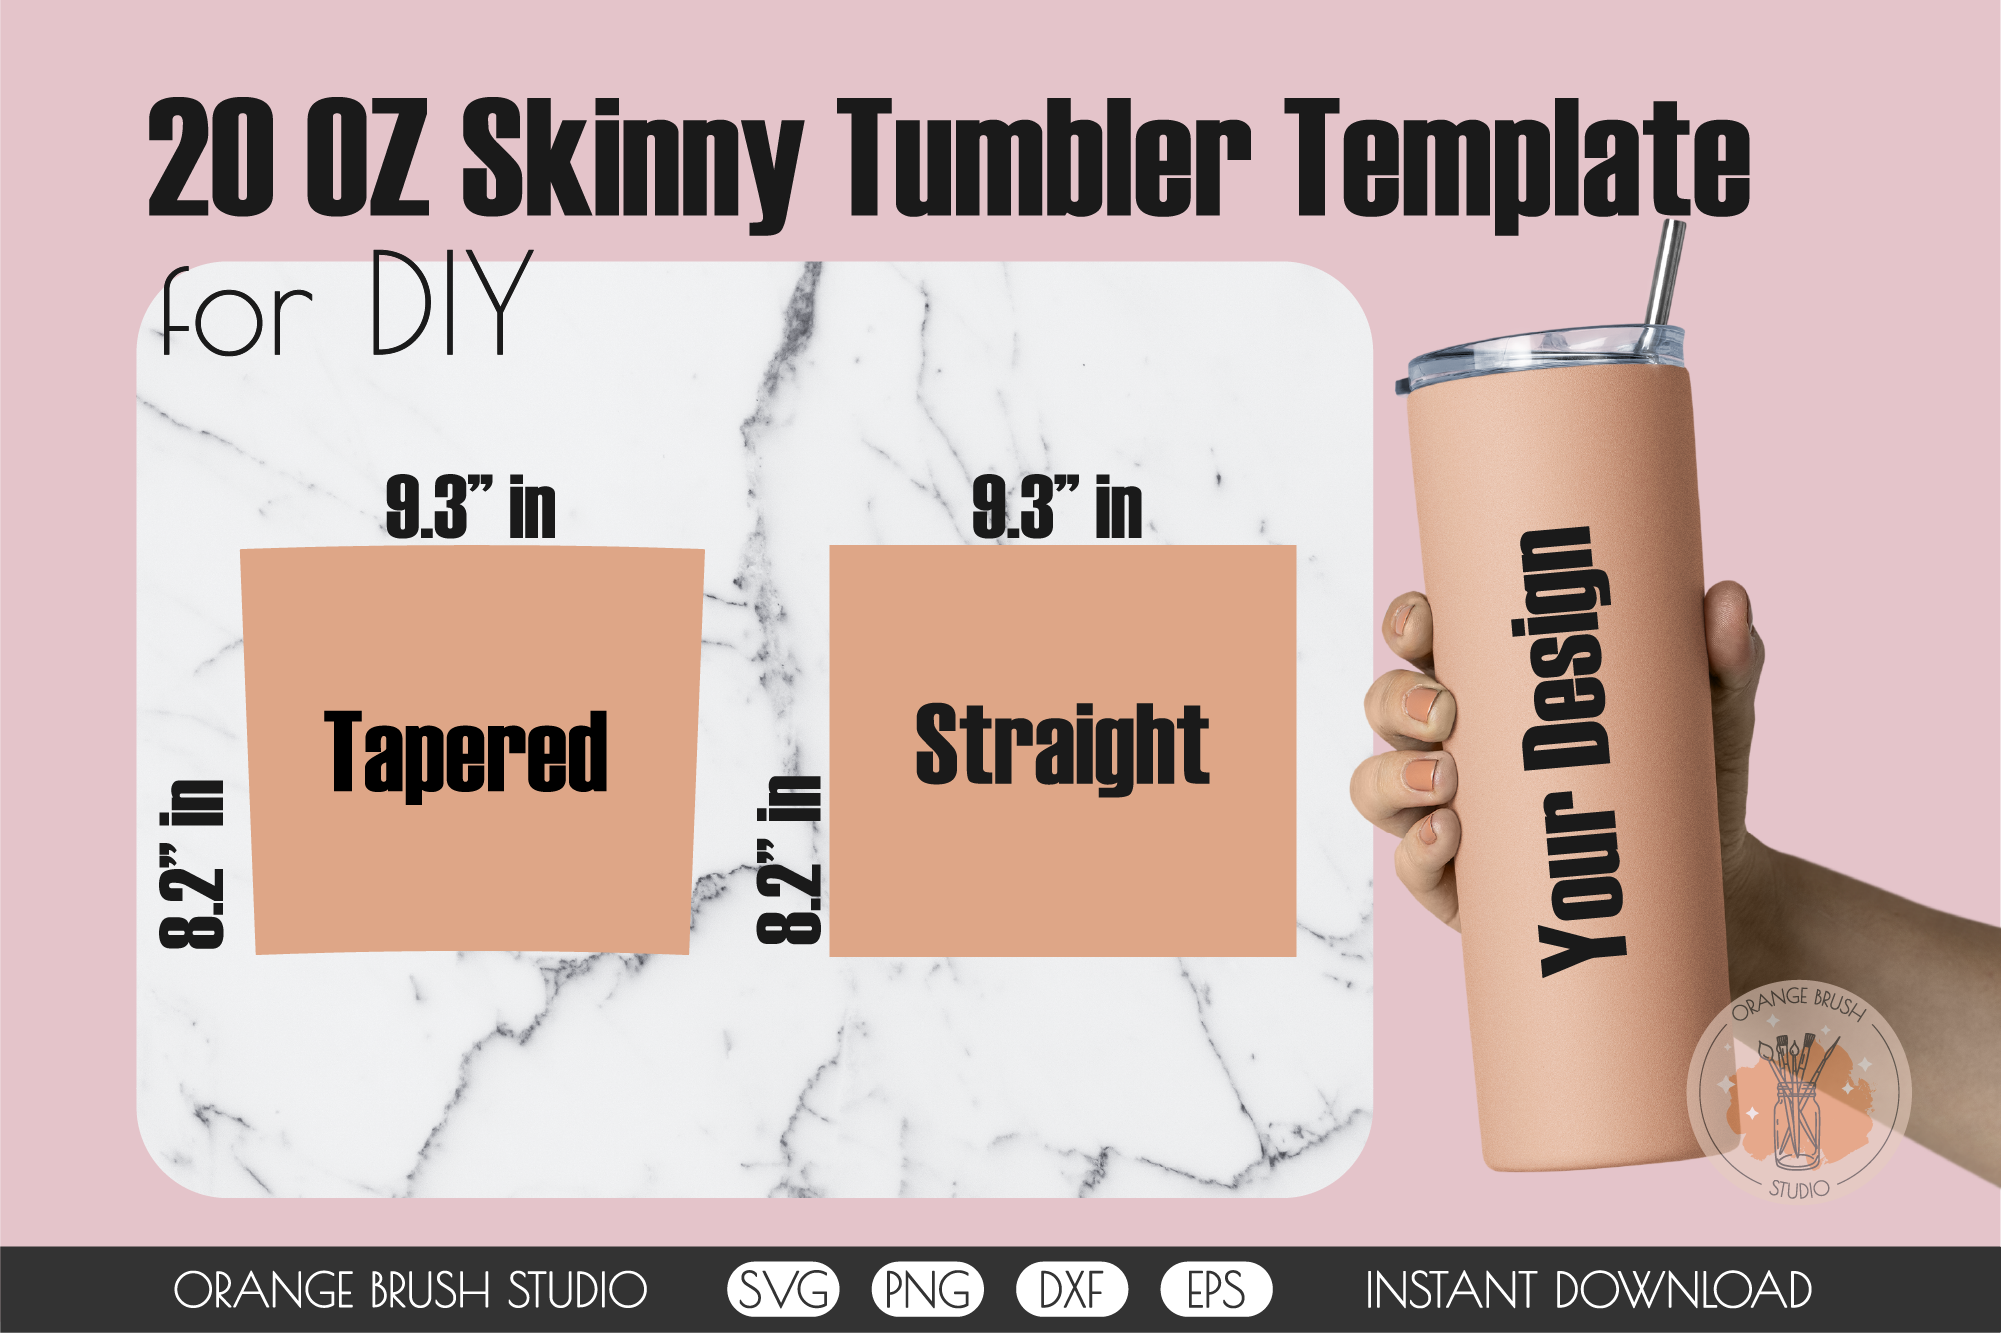 20 oz skinny tumbler template